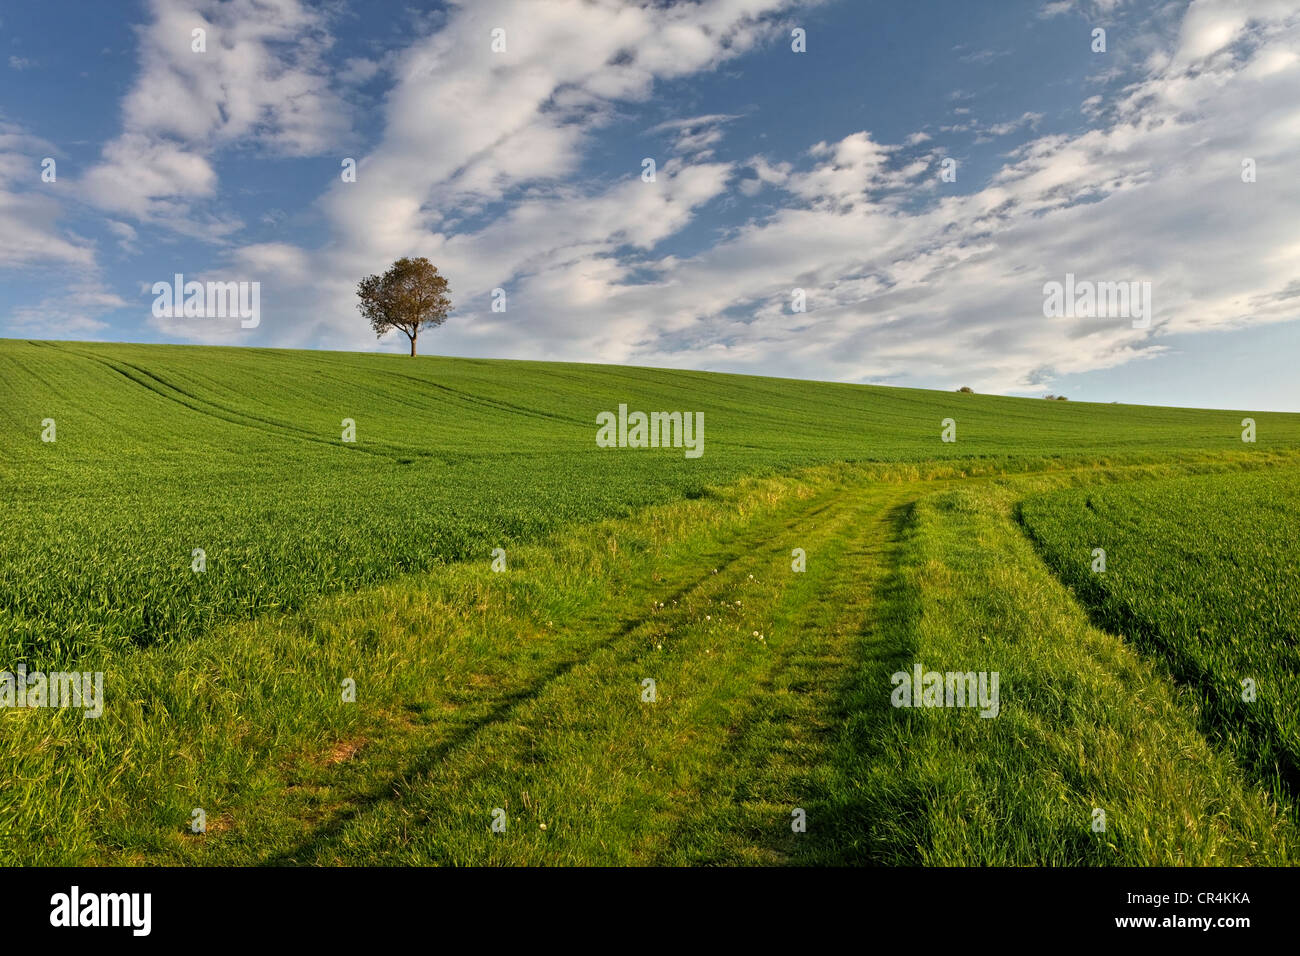 Isoler arbre, champ vert, paysage agricole, Puy de Dome, Auvergne, France, Europe Banque D'Images